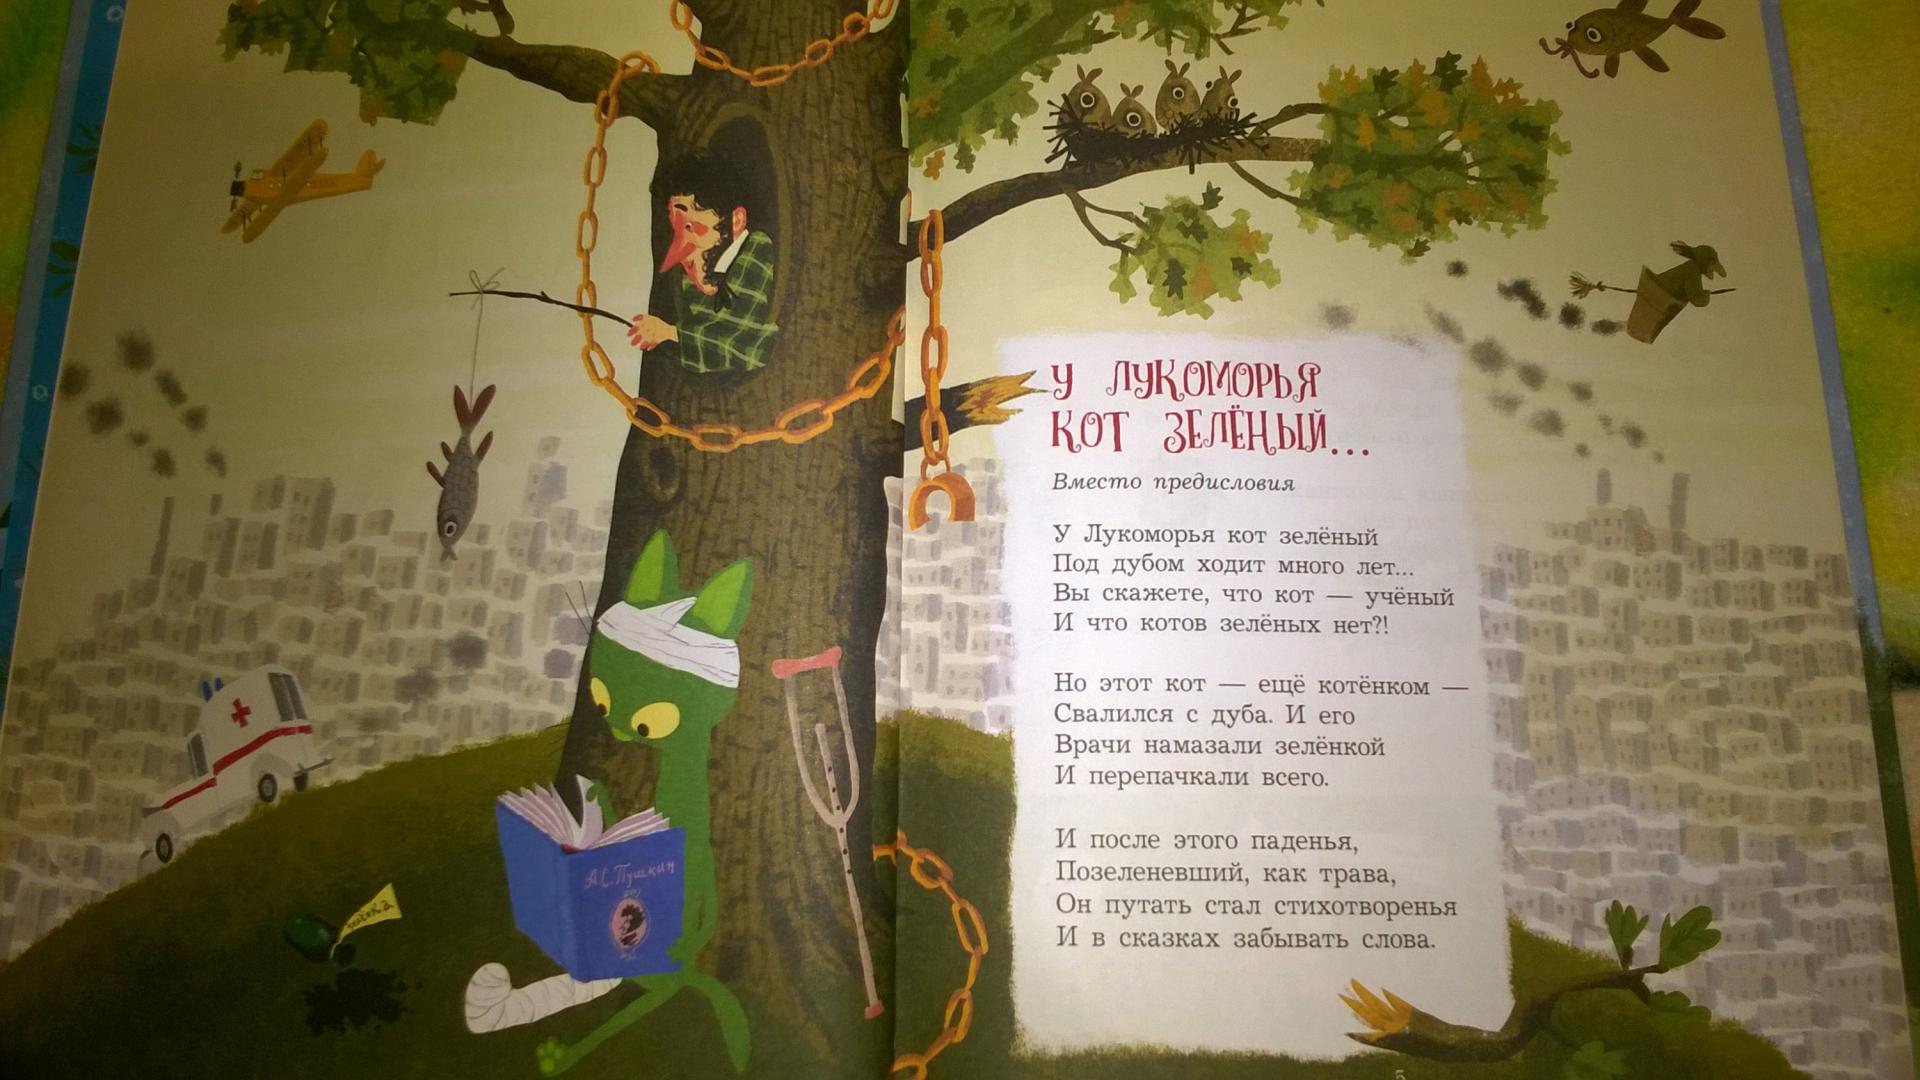 У лукоморья дуб срубили полная. Смешные стихи у Лукоморья дуб зеленый. У Лукоморья дуб спилили стихотворение. Переделаная версия у Лукоморье дуб зеленый. У Лукоморья дуб зеленый стихотворение.